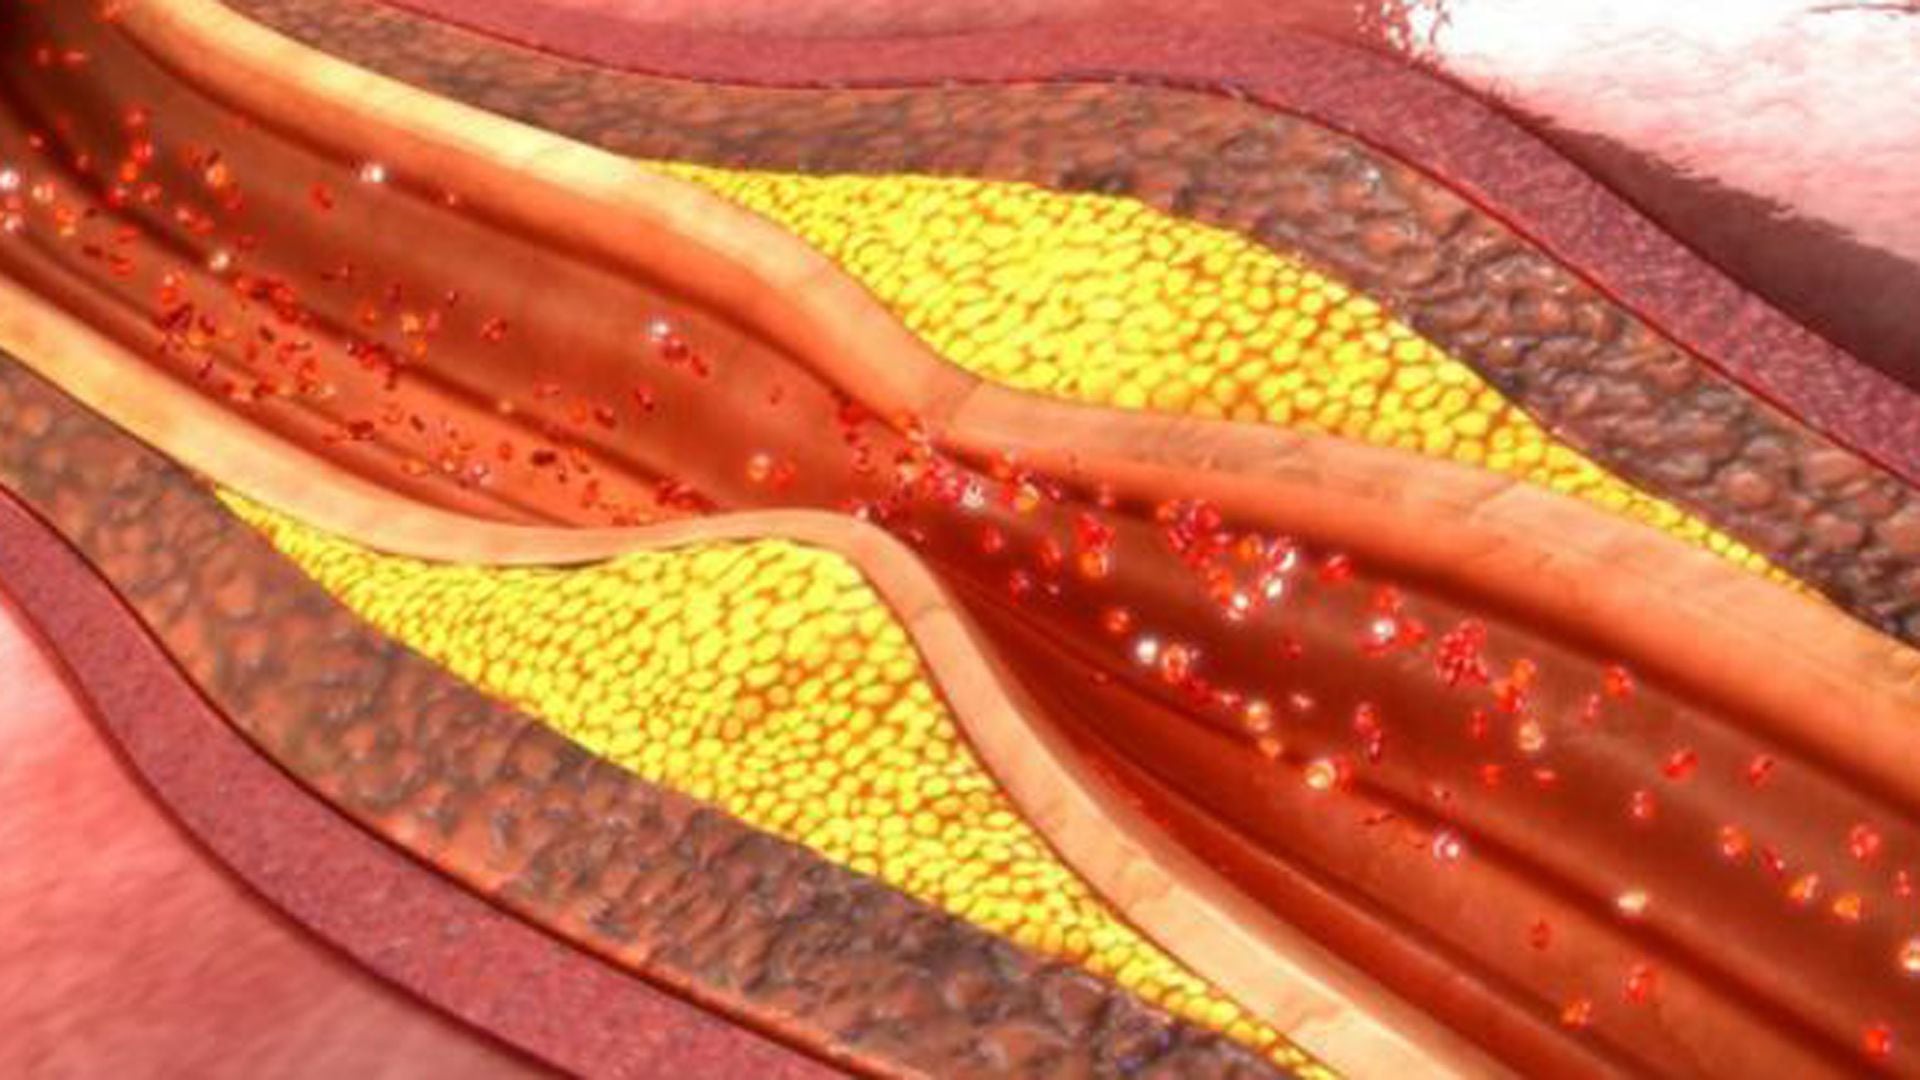 La rotura de la placa  aterosclerótica puede generar un infarto del corazón, un ataque cerebrovascular, la demencia vascular, la disfunción eréctil o pérdida de una de las piernas o de los brazos